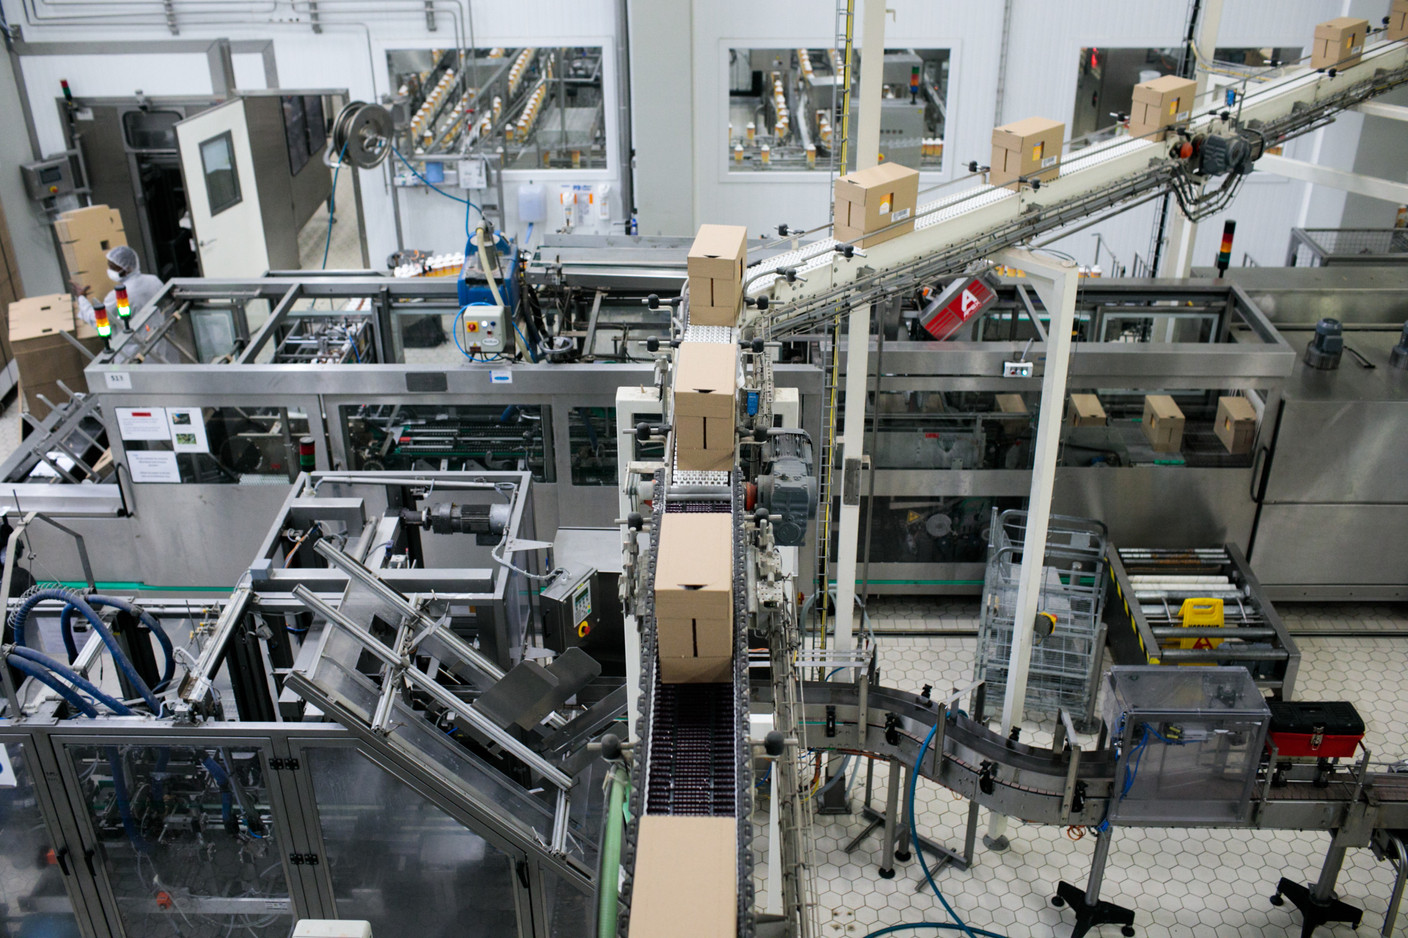 D’énormes machines pour fabriquer les produit laitiers que nous trouvons dans les magasins. (Photo: Matic Zorman / Maison Moderne)